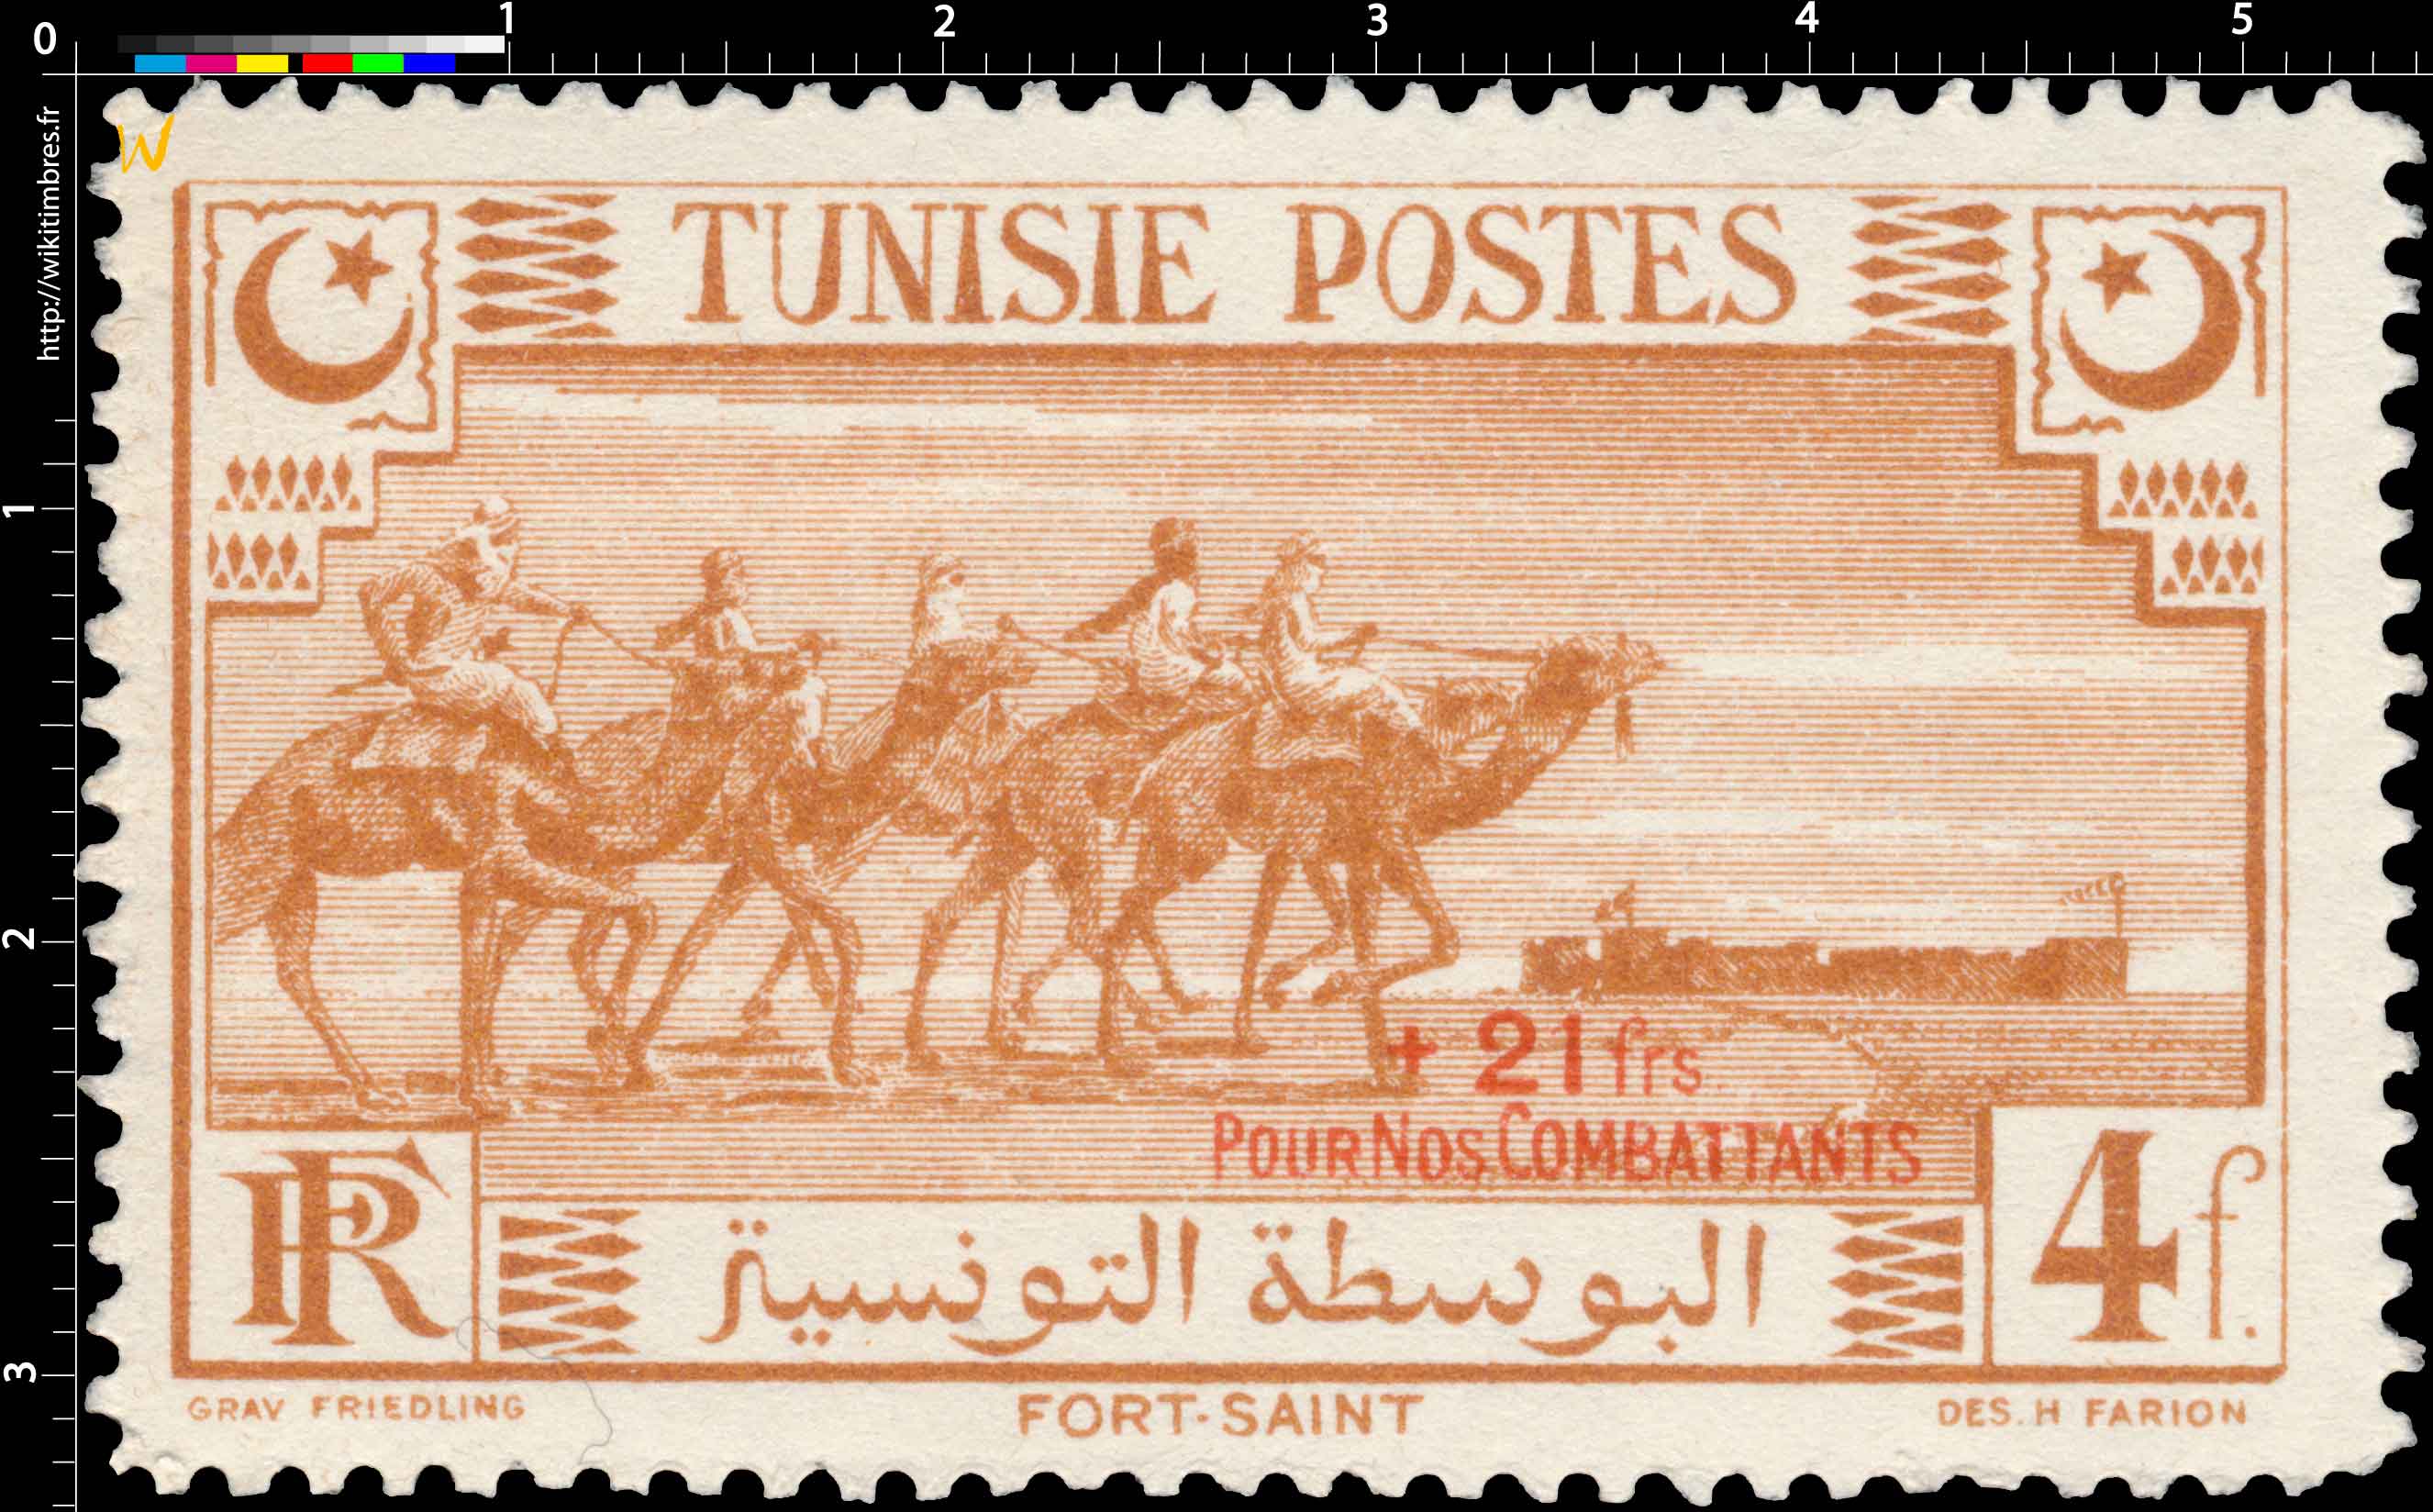 Tunisie - Fort Saint